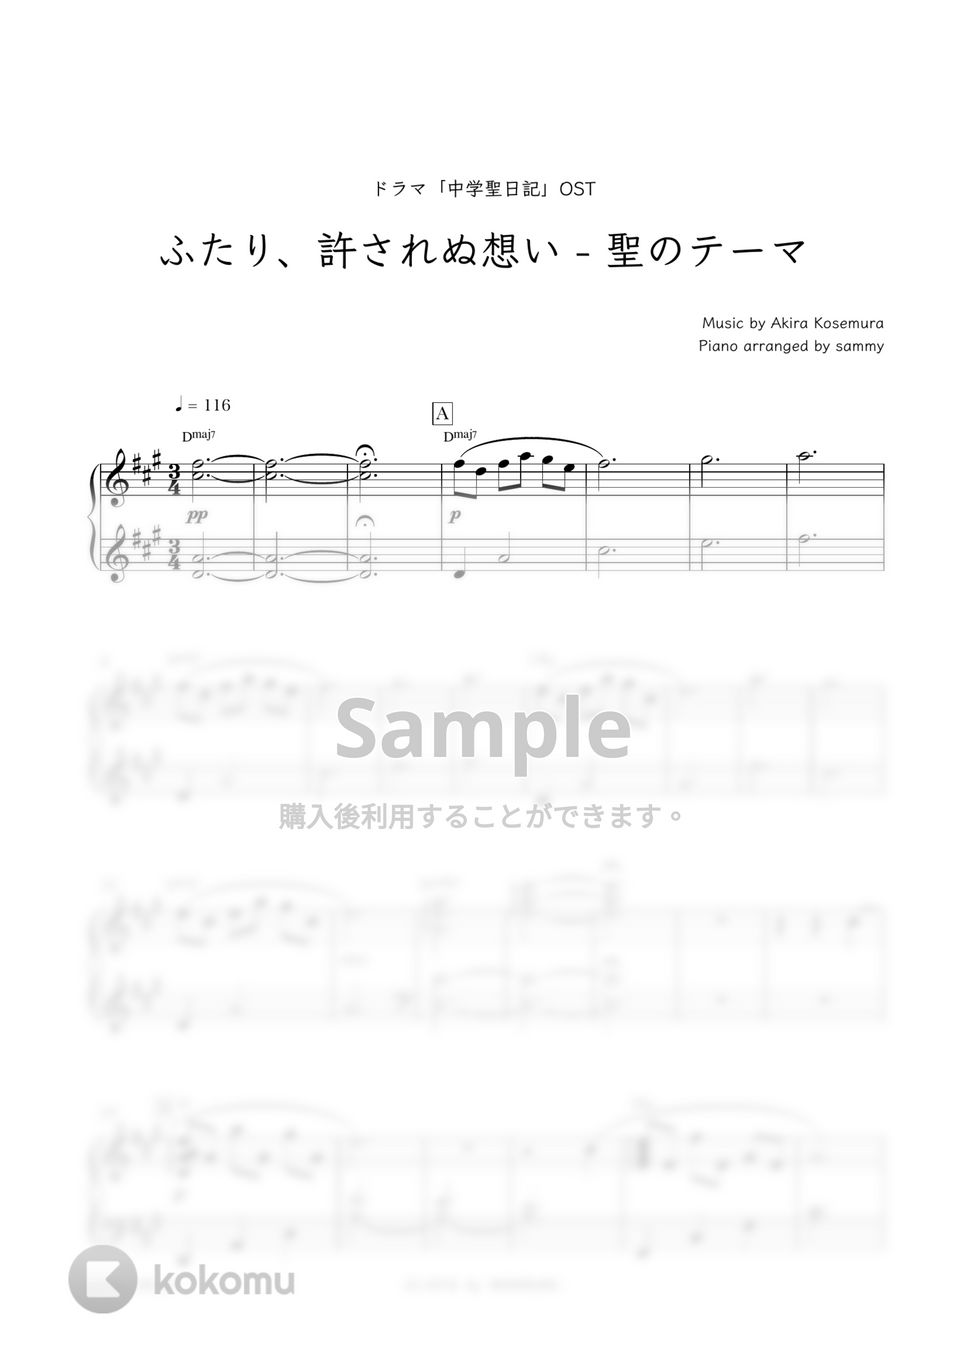 ドラマ『中学聖日記』OST - ふたり、許されぬ想い - 聖のテーマ by sammy